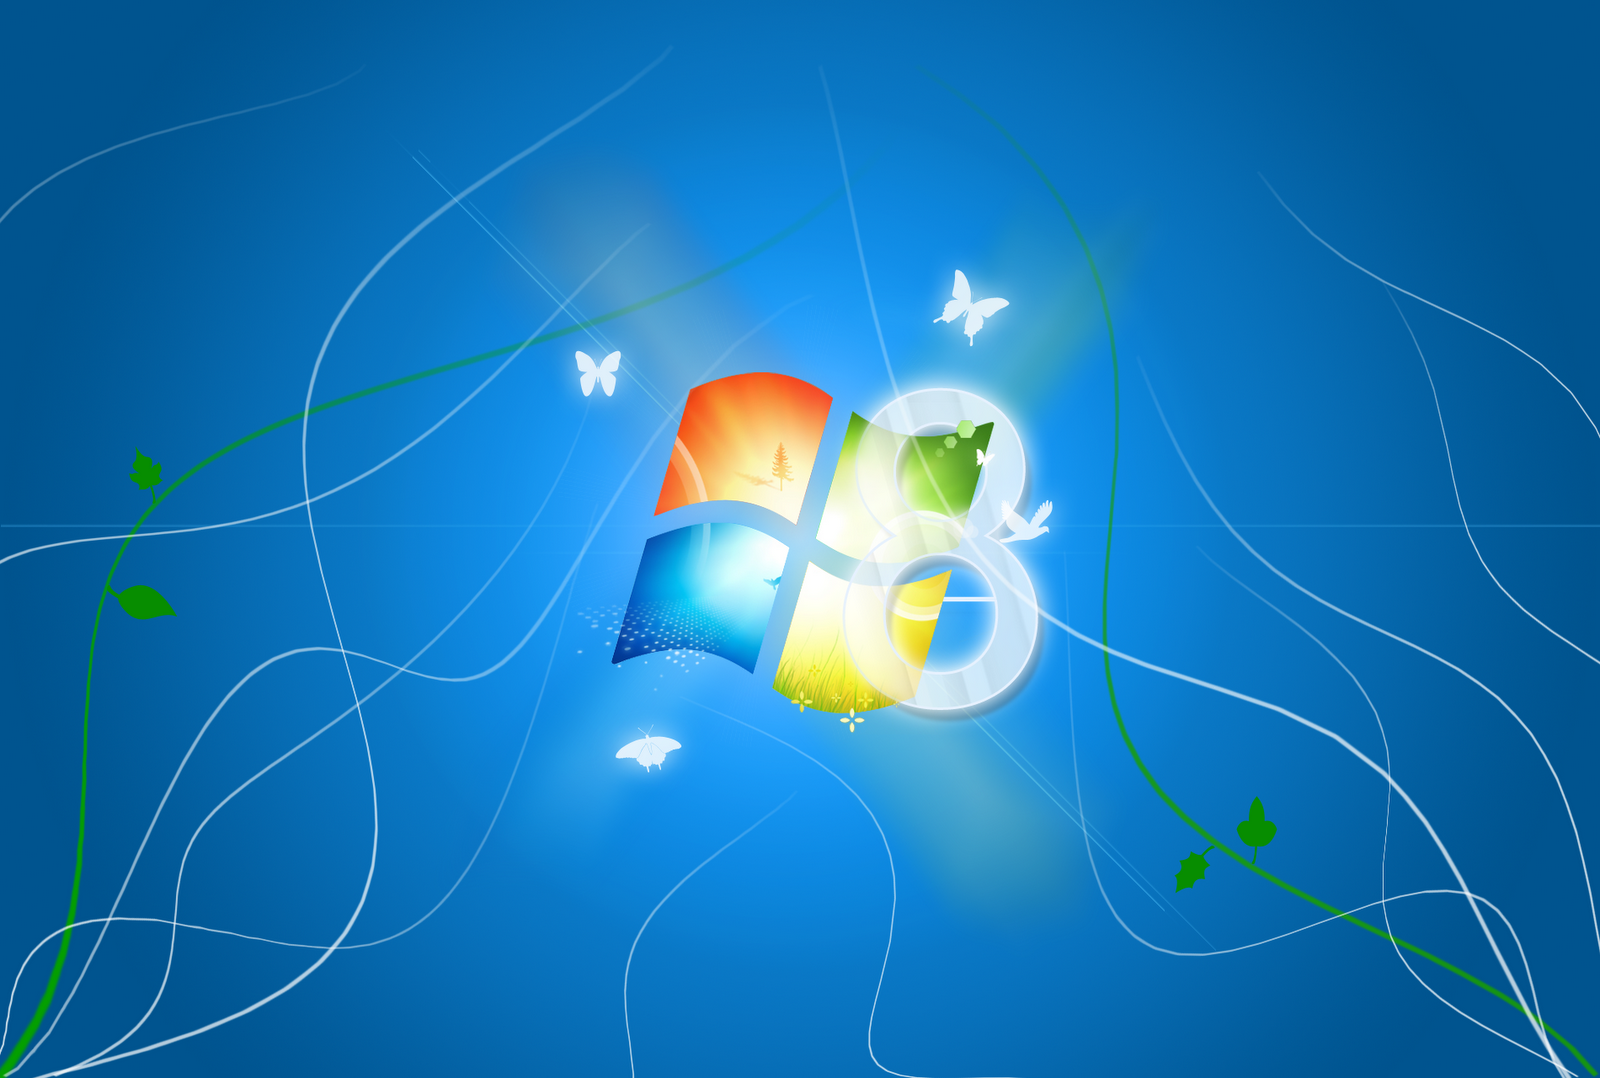 Wallpapers For Windows 8 Desktop: Muốn trang trí máy tính để bàn của bạn thêm phần độc đáo và tươi mới? Hãy truy cập ngay để tận hưởng bộ sưu tập Wallpapers For Windows 8 Desktop độc đáo và đẹp mắt, mang đến cho bạn cảm giác mới lạ và thú vị.